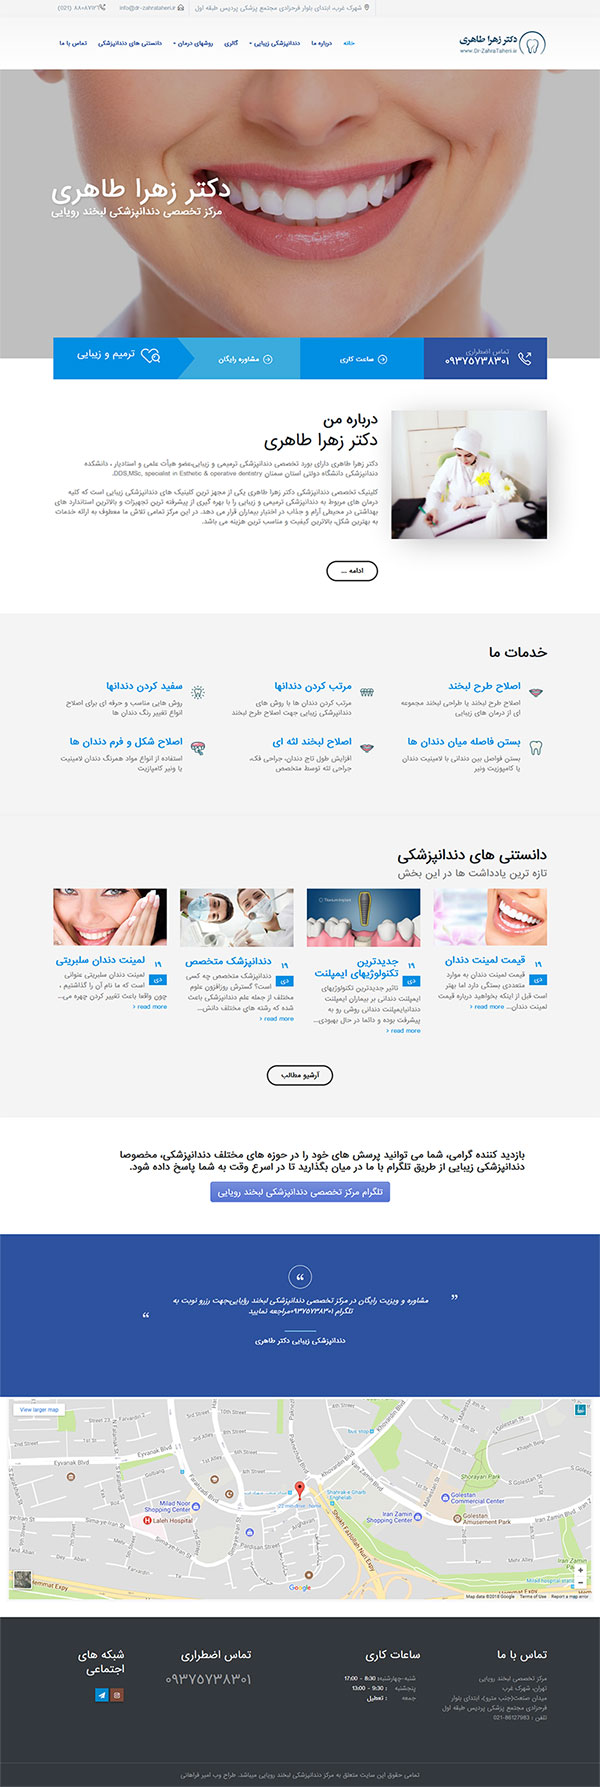 طراحی سایت دندانپزشکی مرکز تخصصی لبخند رویایی دکتر زهرا طاهری